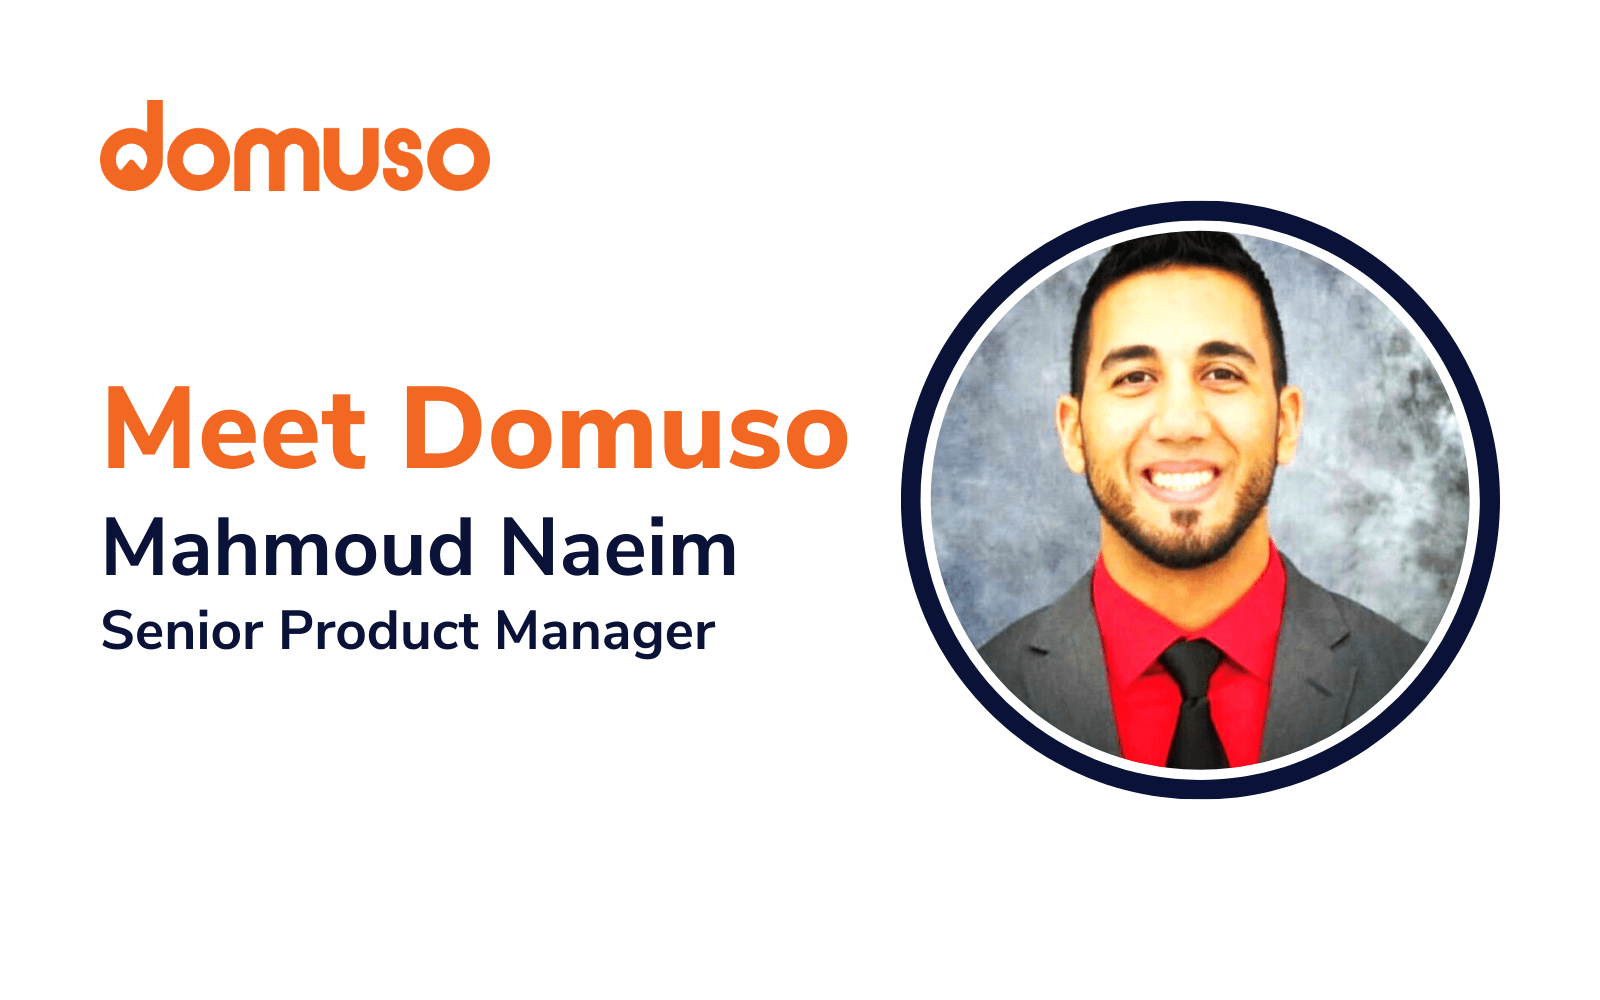 Meet Domuso: Mahmoud Naeim